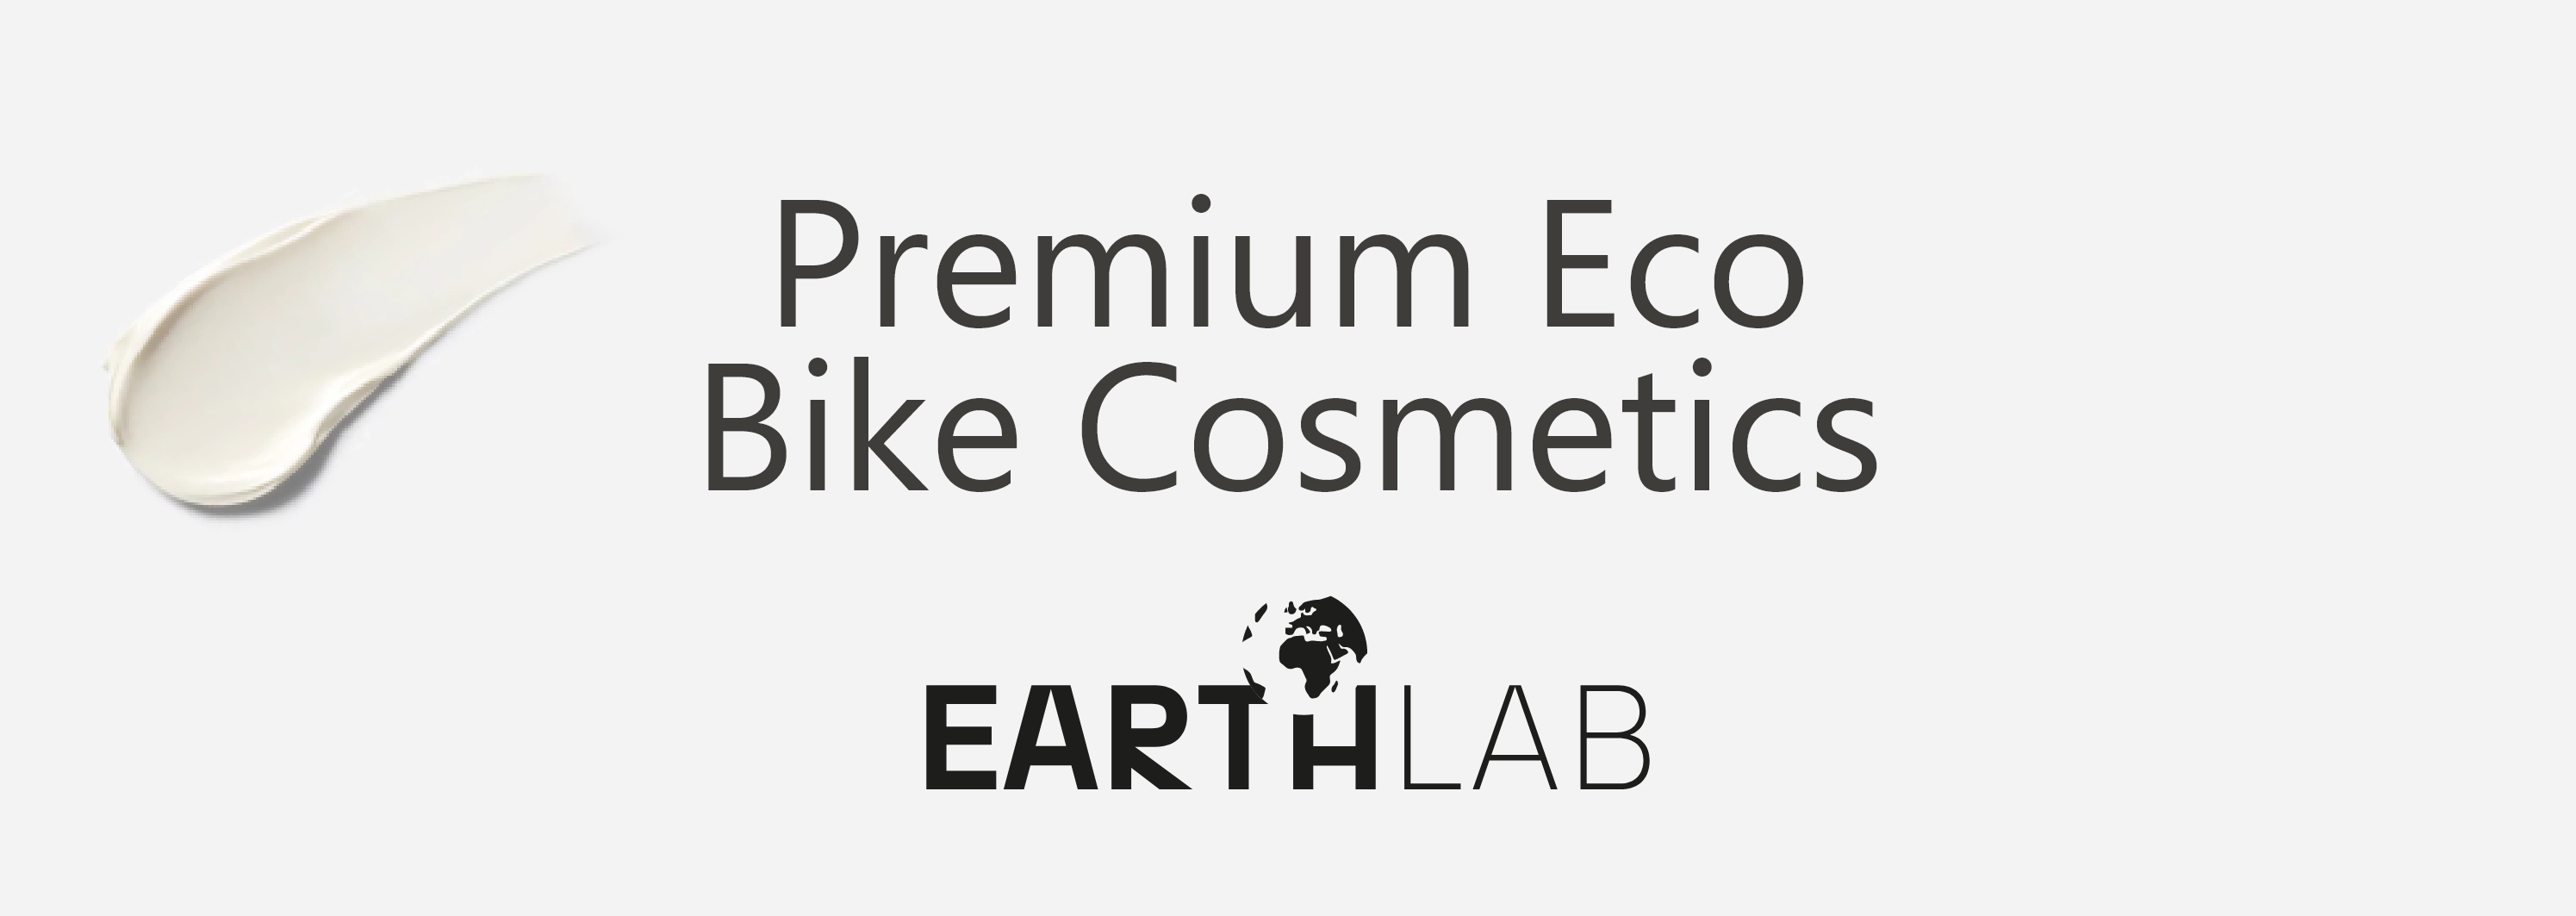 Earthlab Premium Eco Bike Cosmetics